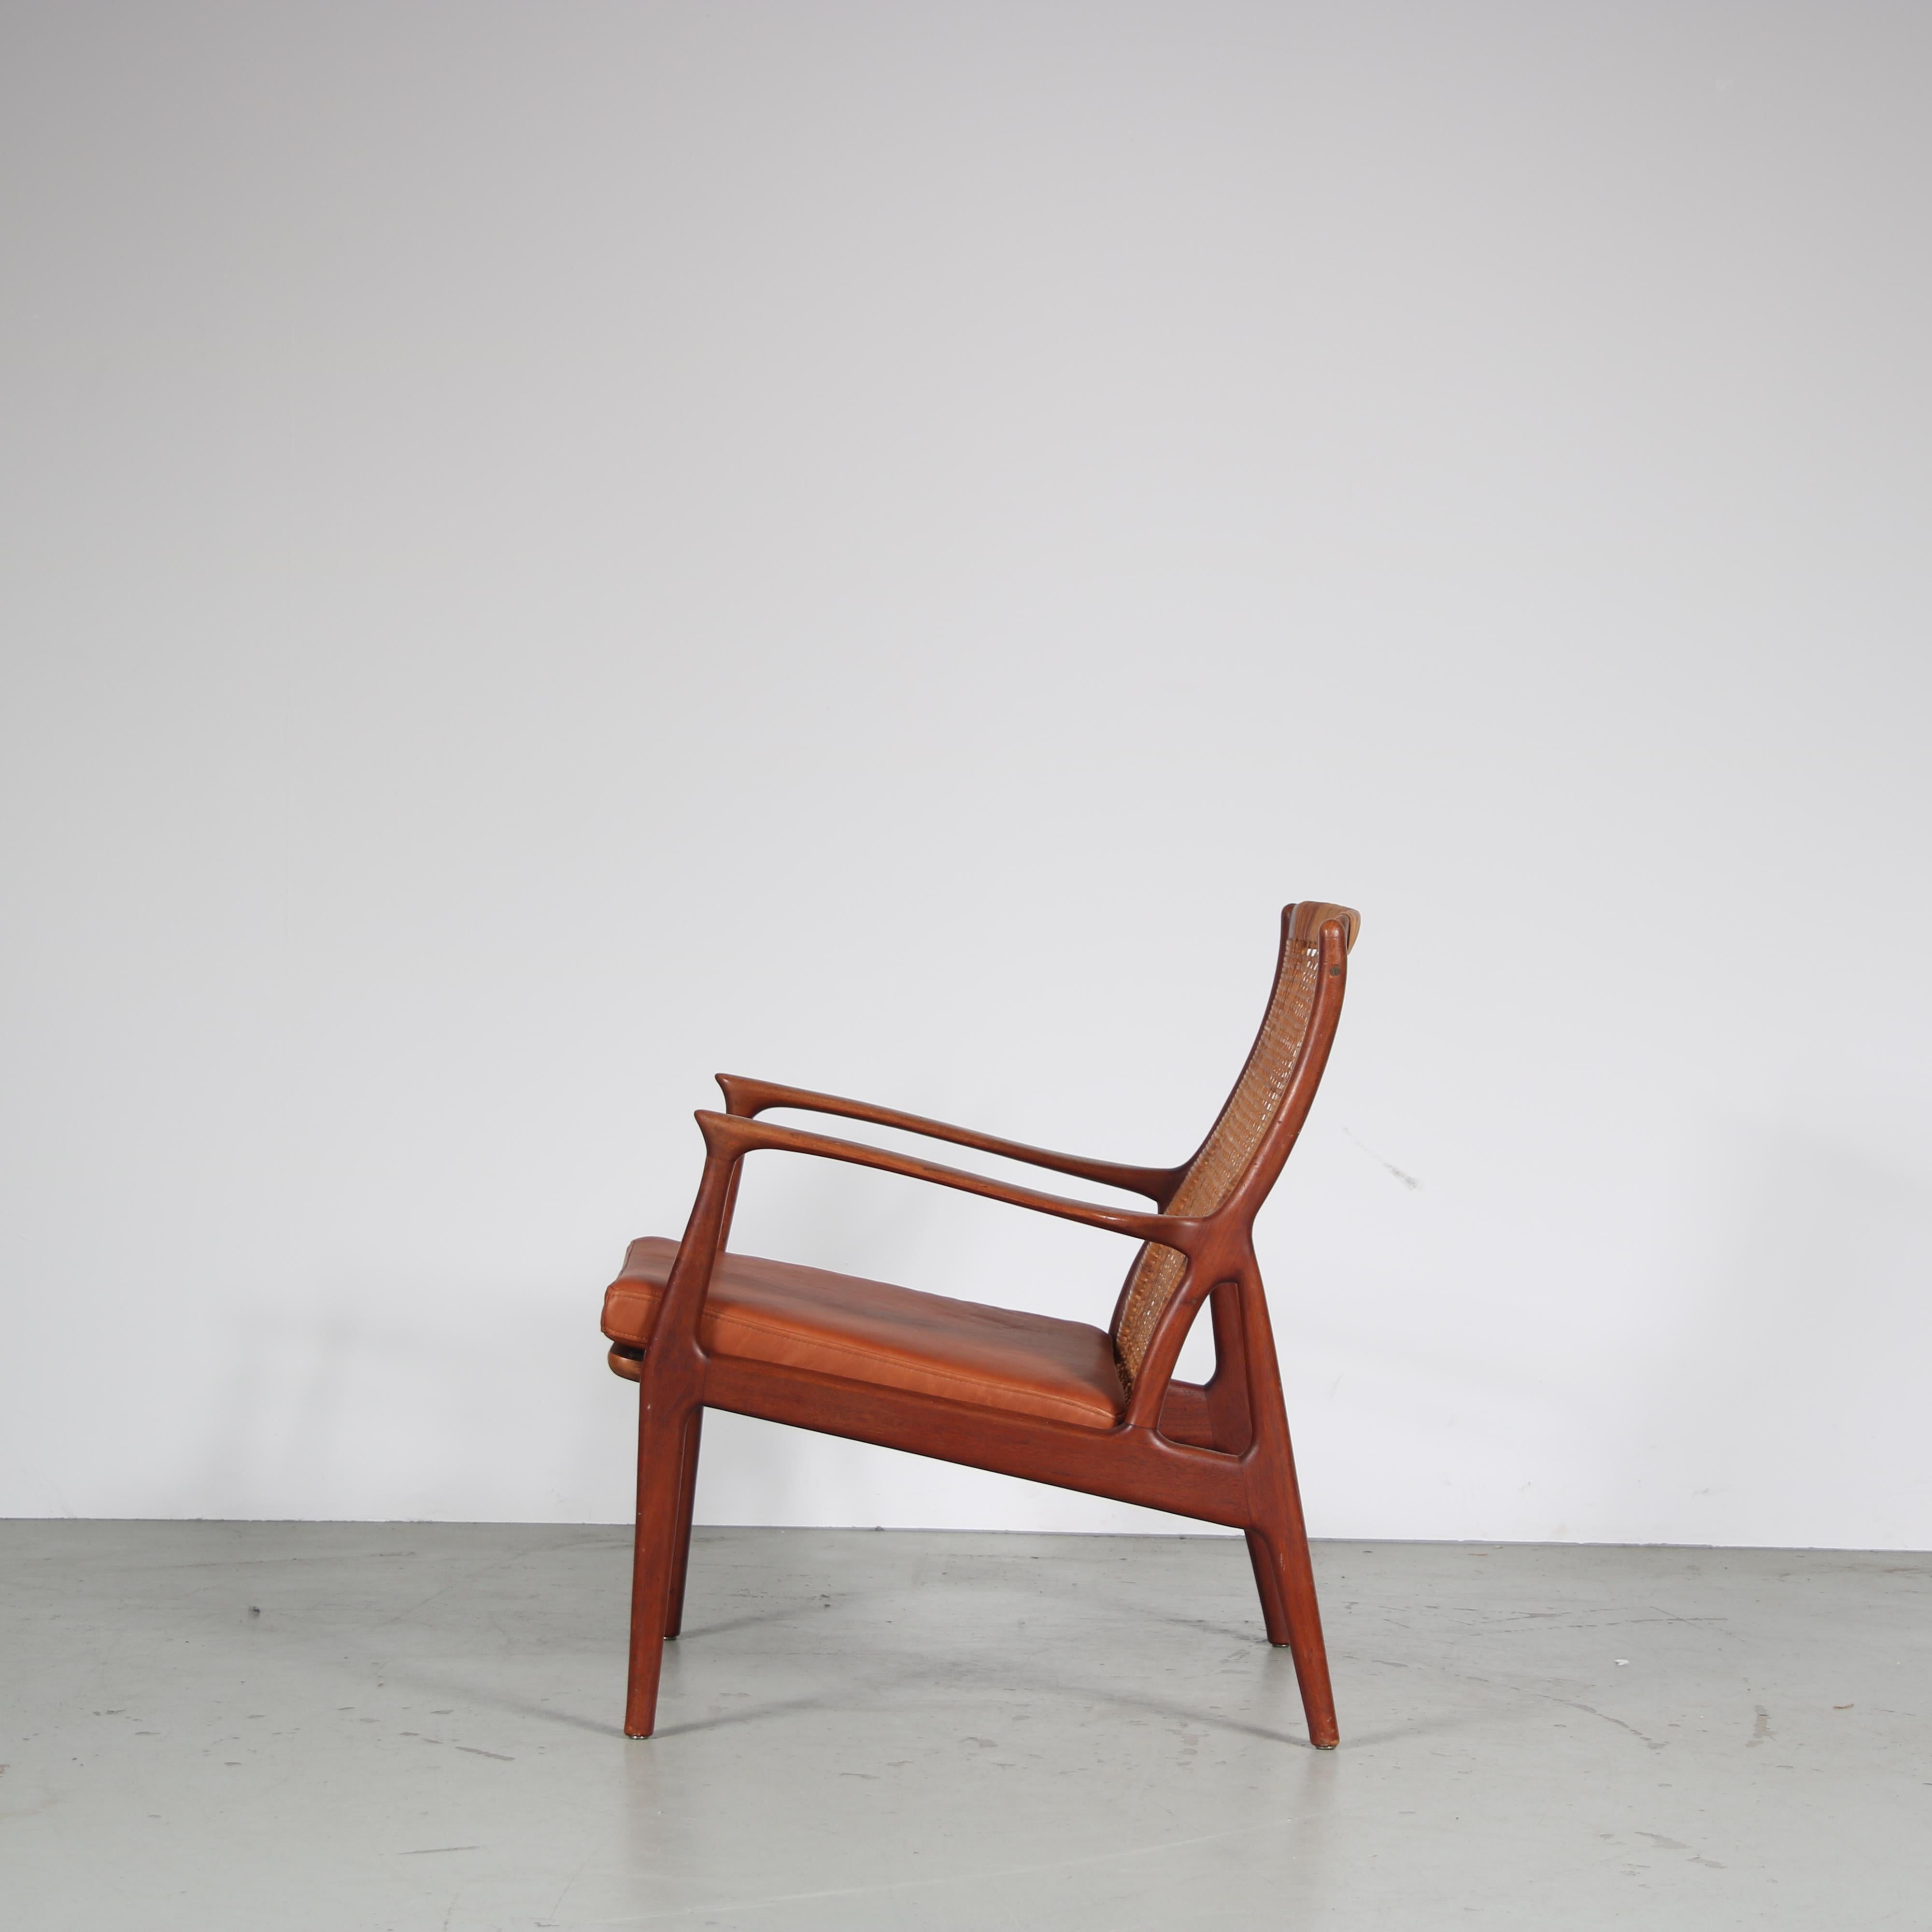 Mid-20th Century Erik Andsersen Lounge Chair for Palle Pedersen, Denmark 1950